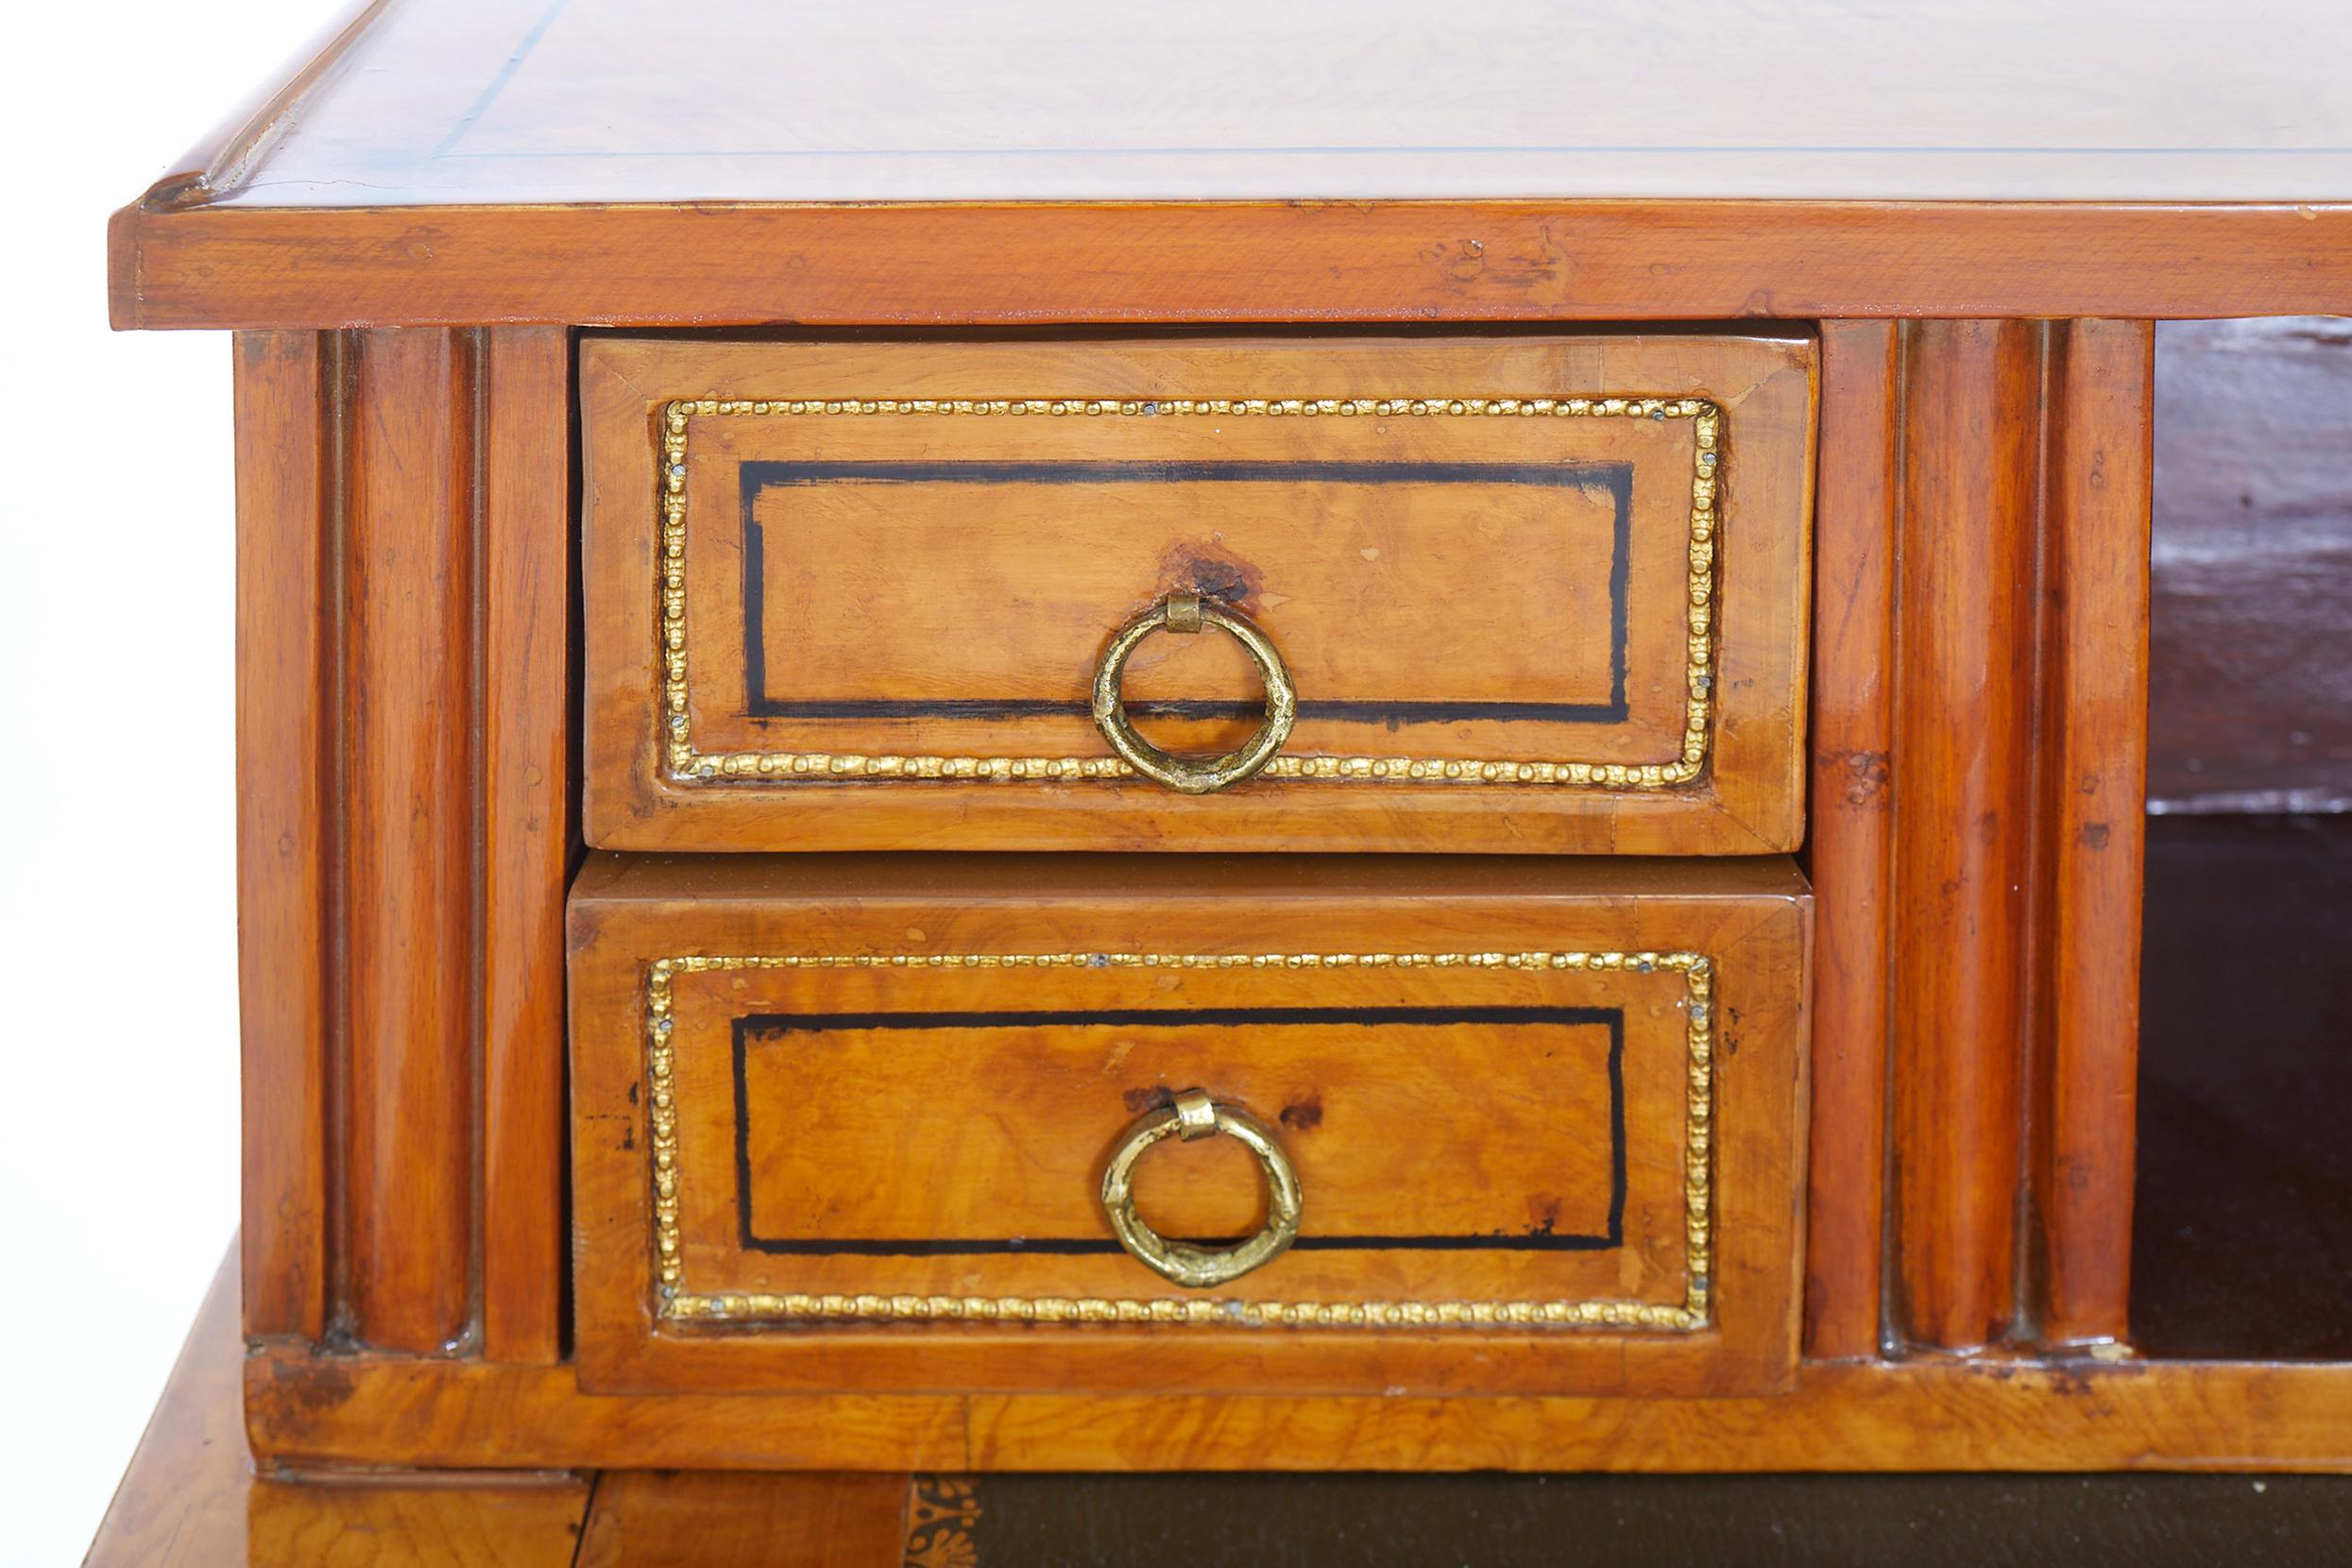 Schöner und eleganter Louis-Philippe-Schreibtisch aus Mahagoni-Wurzelholz mit Leder und bronzefarbenen Designdetails. Der Schreibtisch verfügt über viele Schubladen und eine tiefe Schublade mit Frontauszug. Der Schreibtisch ist in sehr gutem Zustand